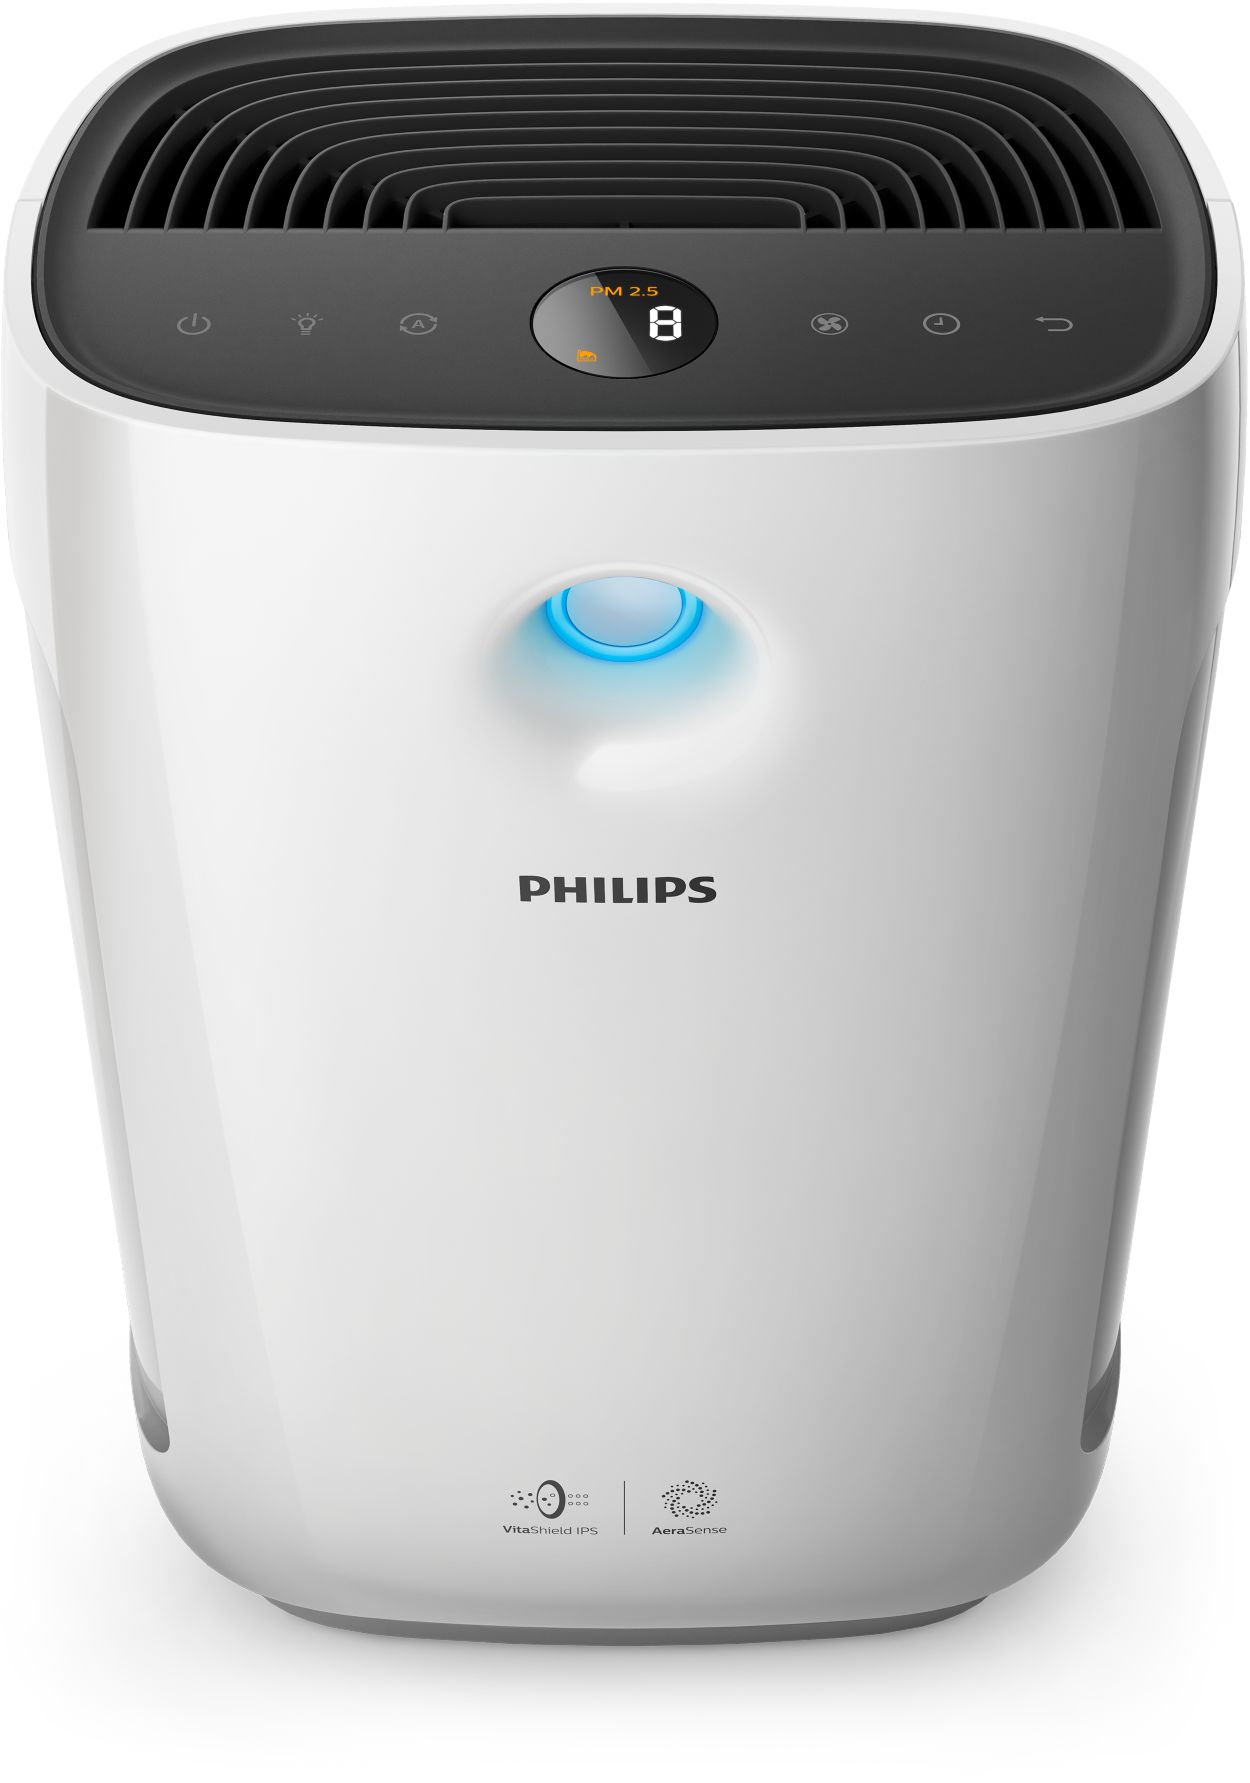 Philips présente un nouveau purificateur d'air Série 2000 3 en 1  (venitlateur et chauffage) - Univers Habitat